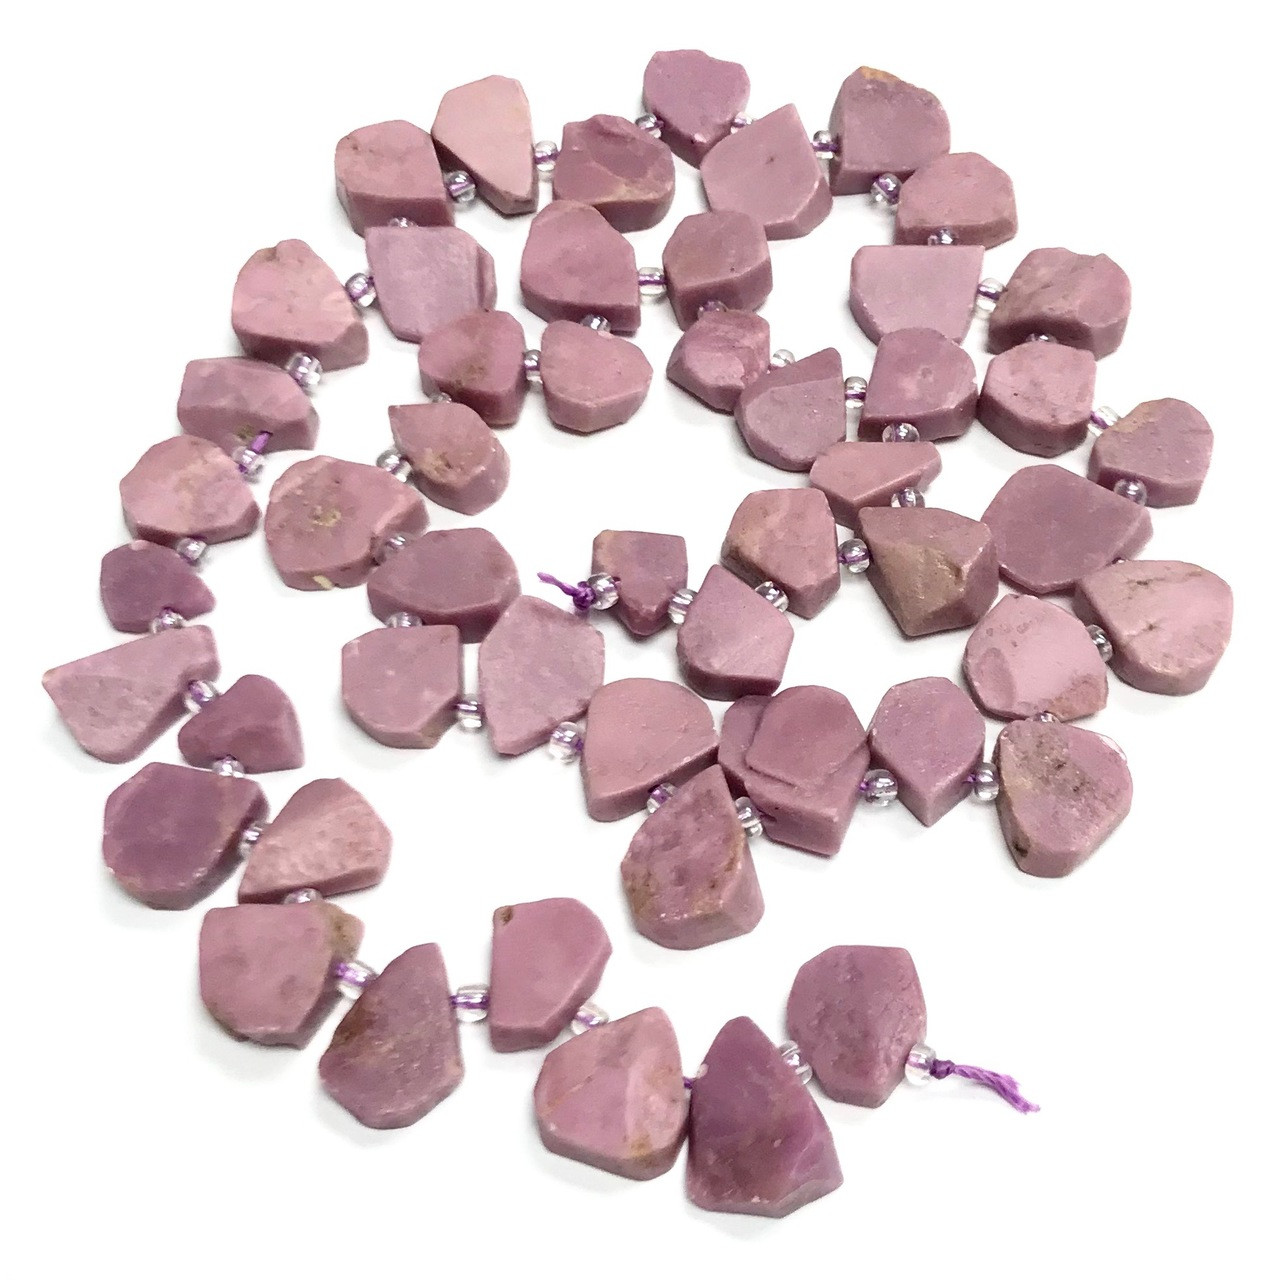 Phosphosiderite Beads, Purple Gemstone Beads